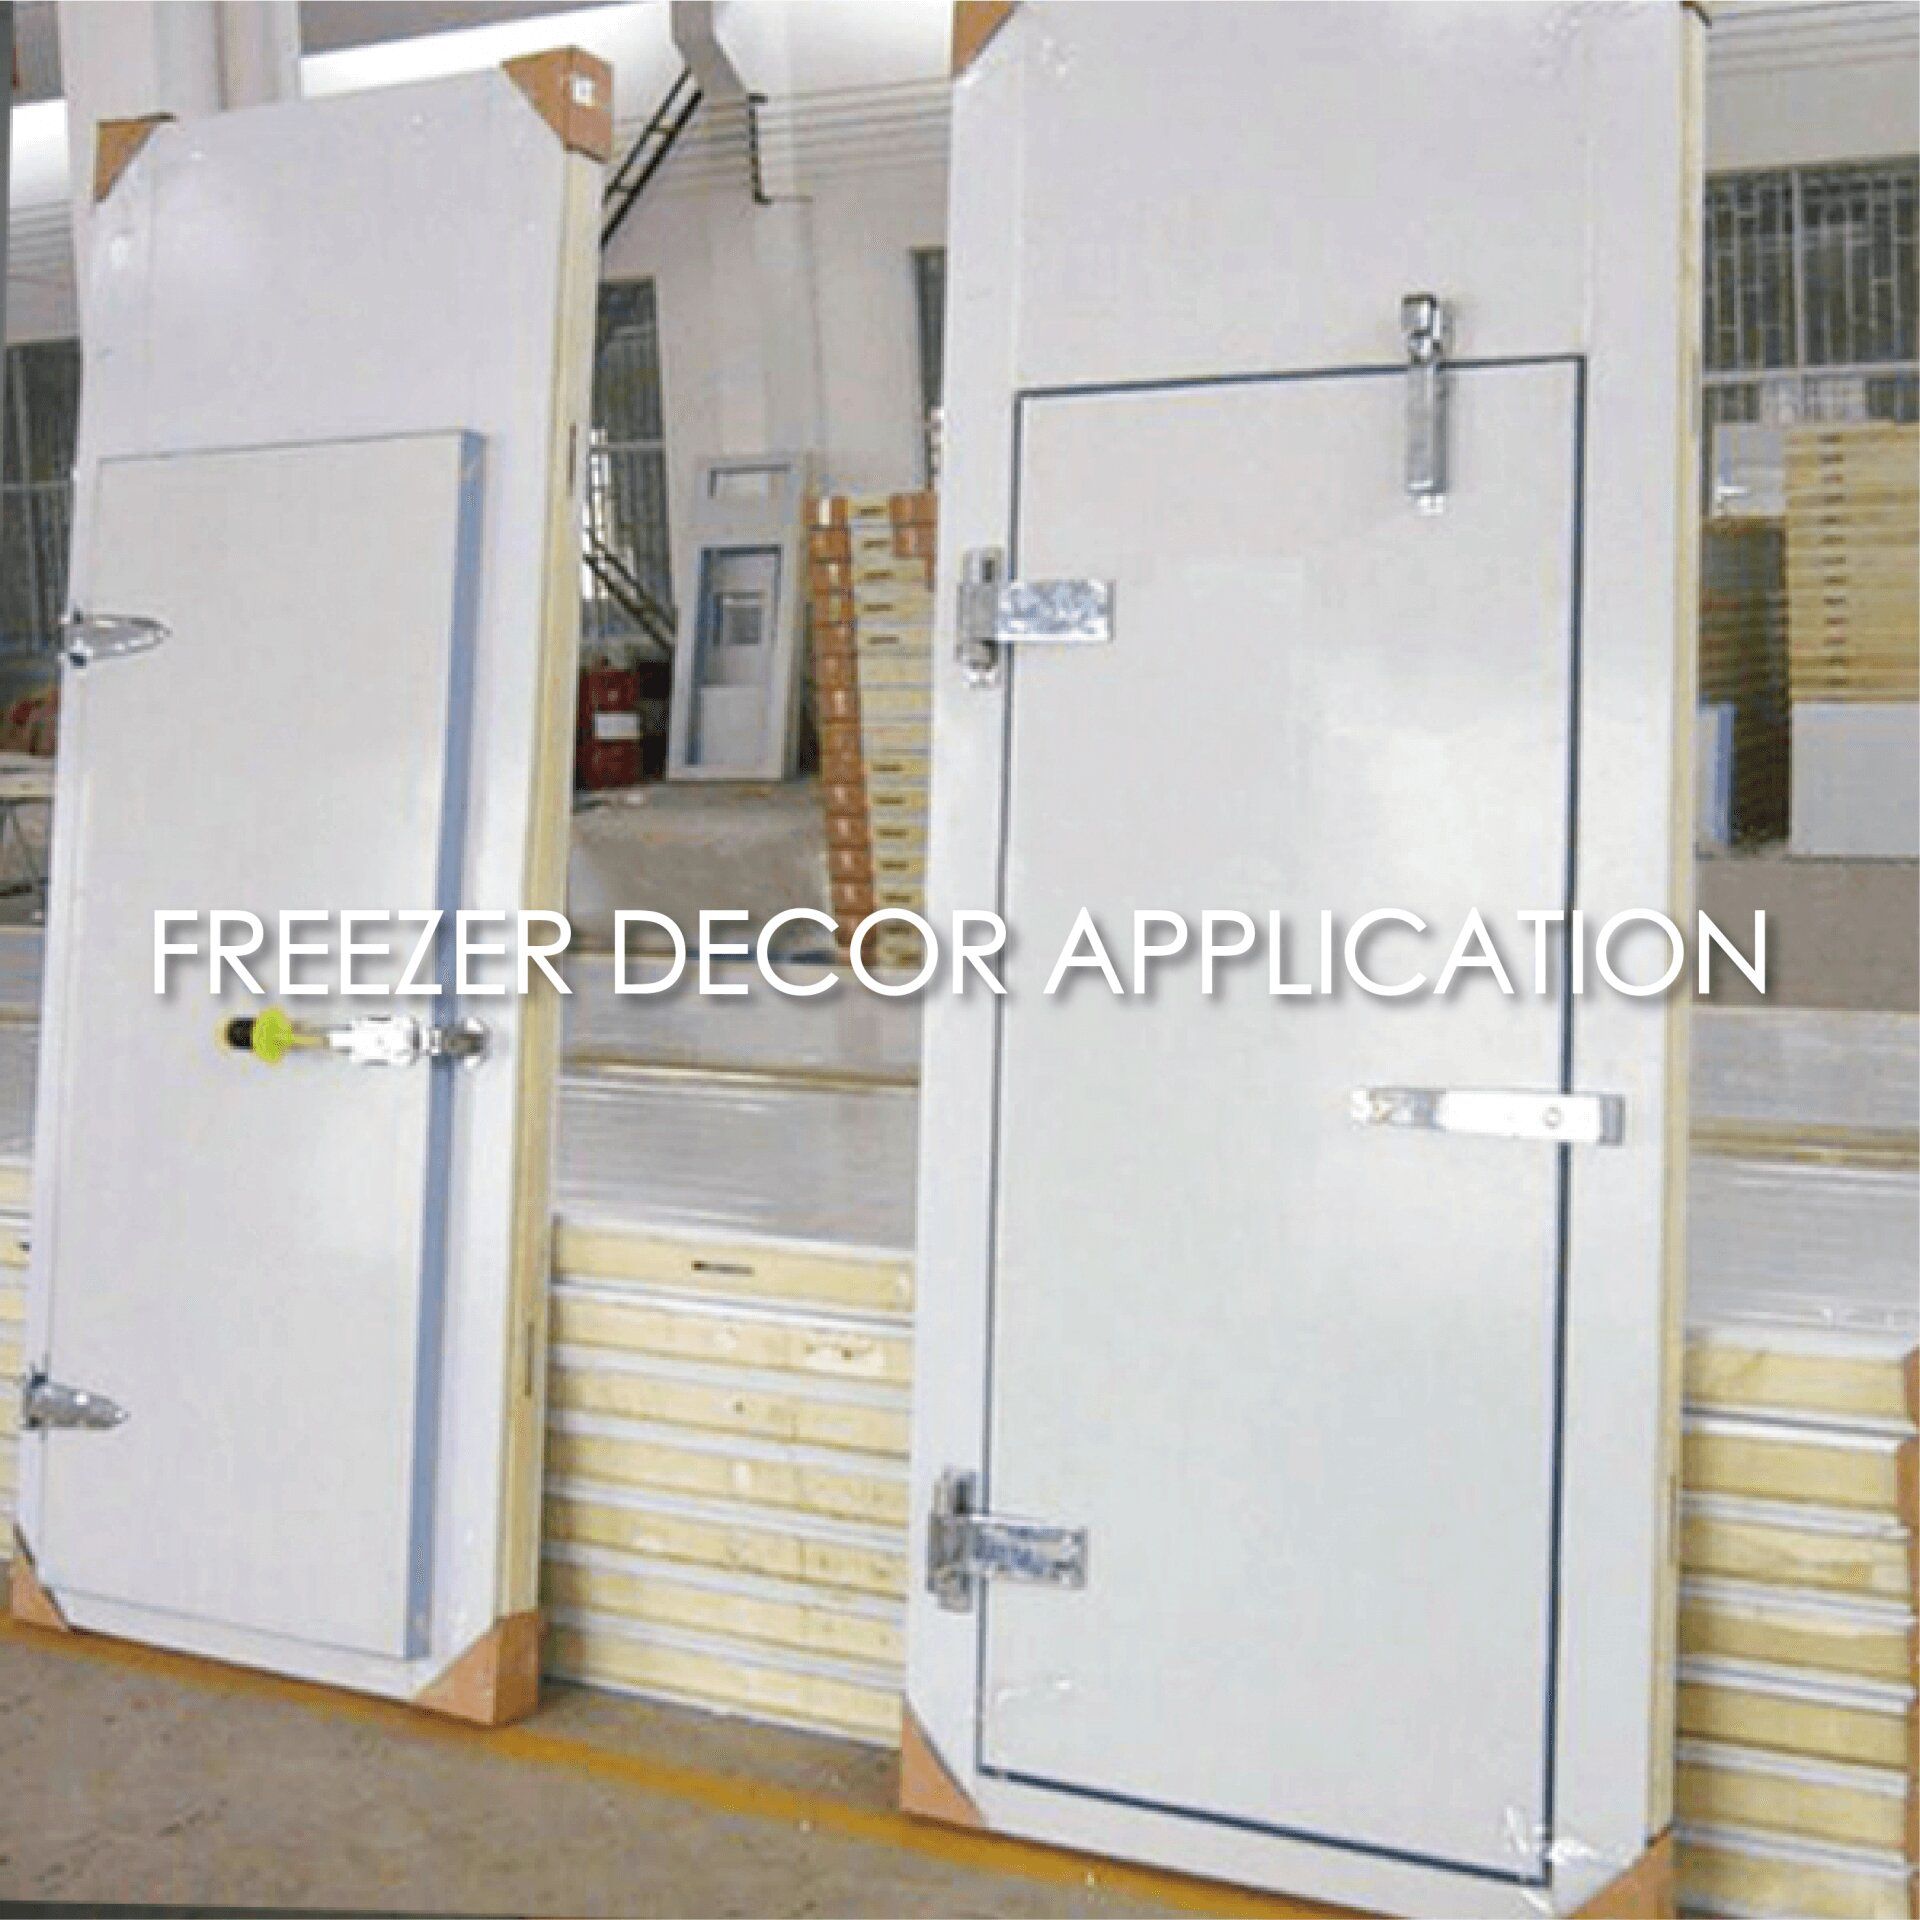 選用覆膜金屬製作冷凍庫板能增加美觀性和耐用性